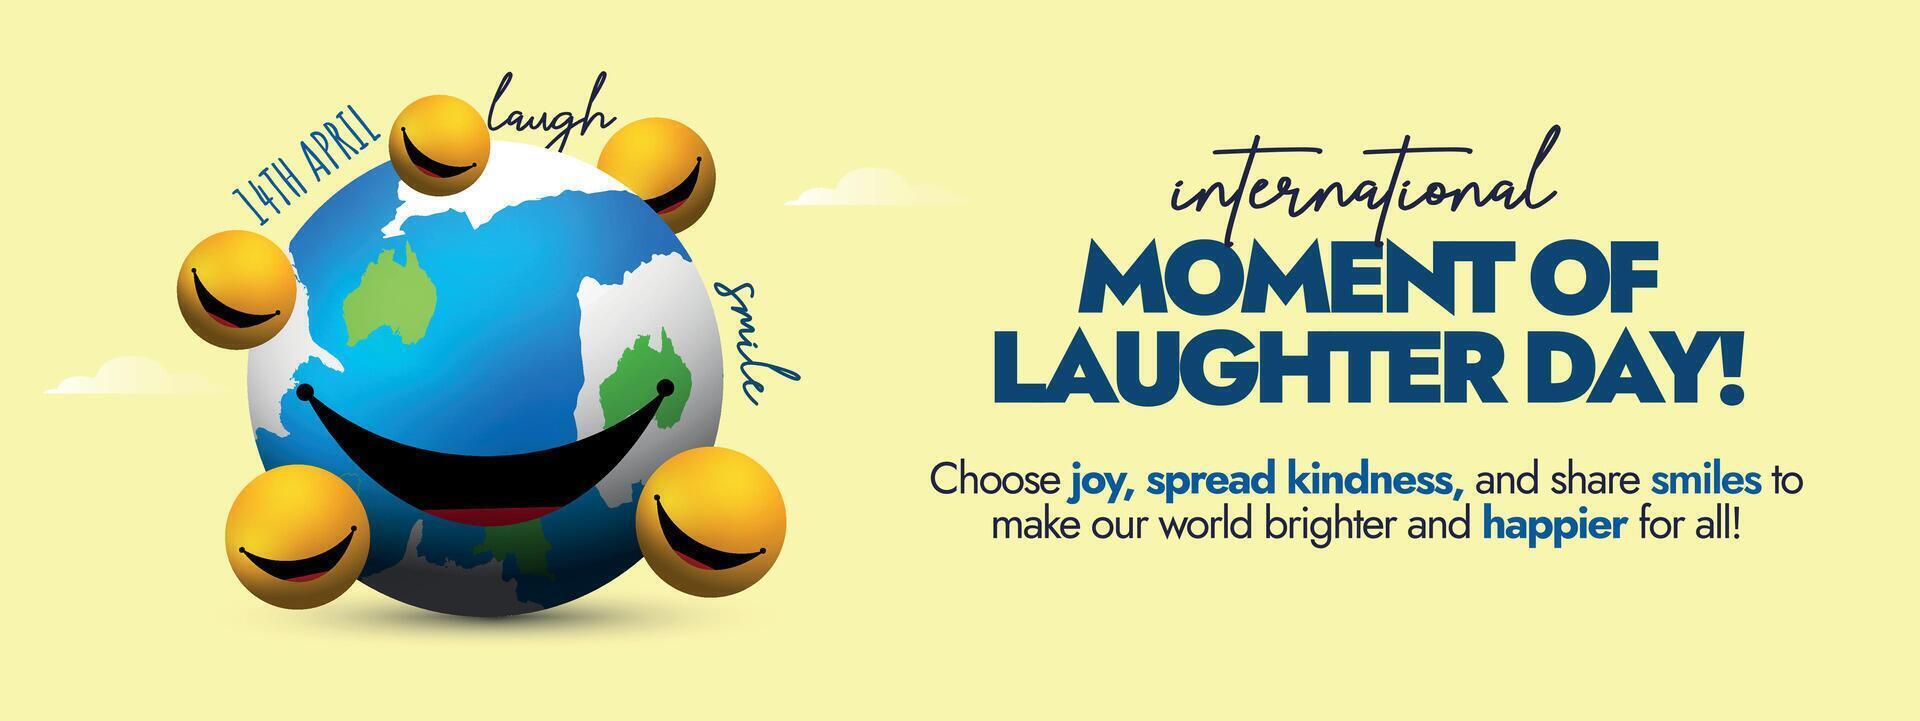 International Moment von Lachen Tag.14 April Welt Lachen Tag Feier Startseite Banner mit Erde Globus haben groß Lächeln und Gelb lächelnd Emojis um Es. Lachen Tag Startseite Banner Konzept. vektor